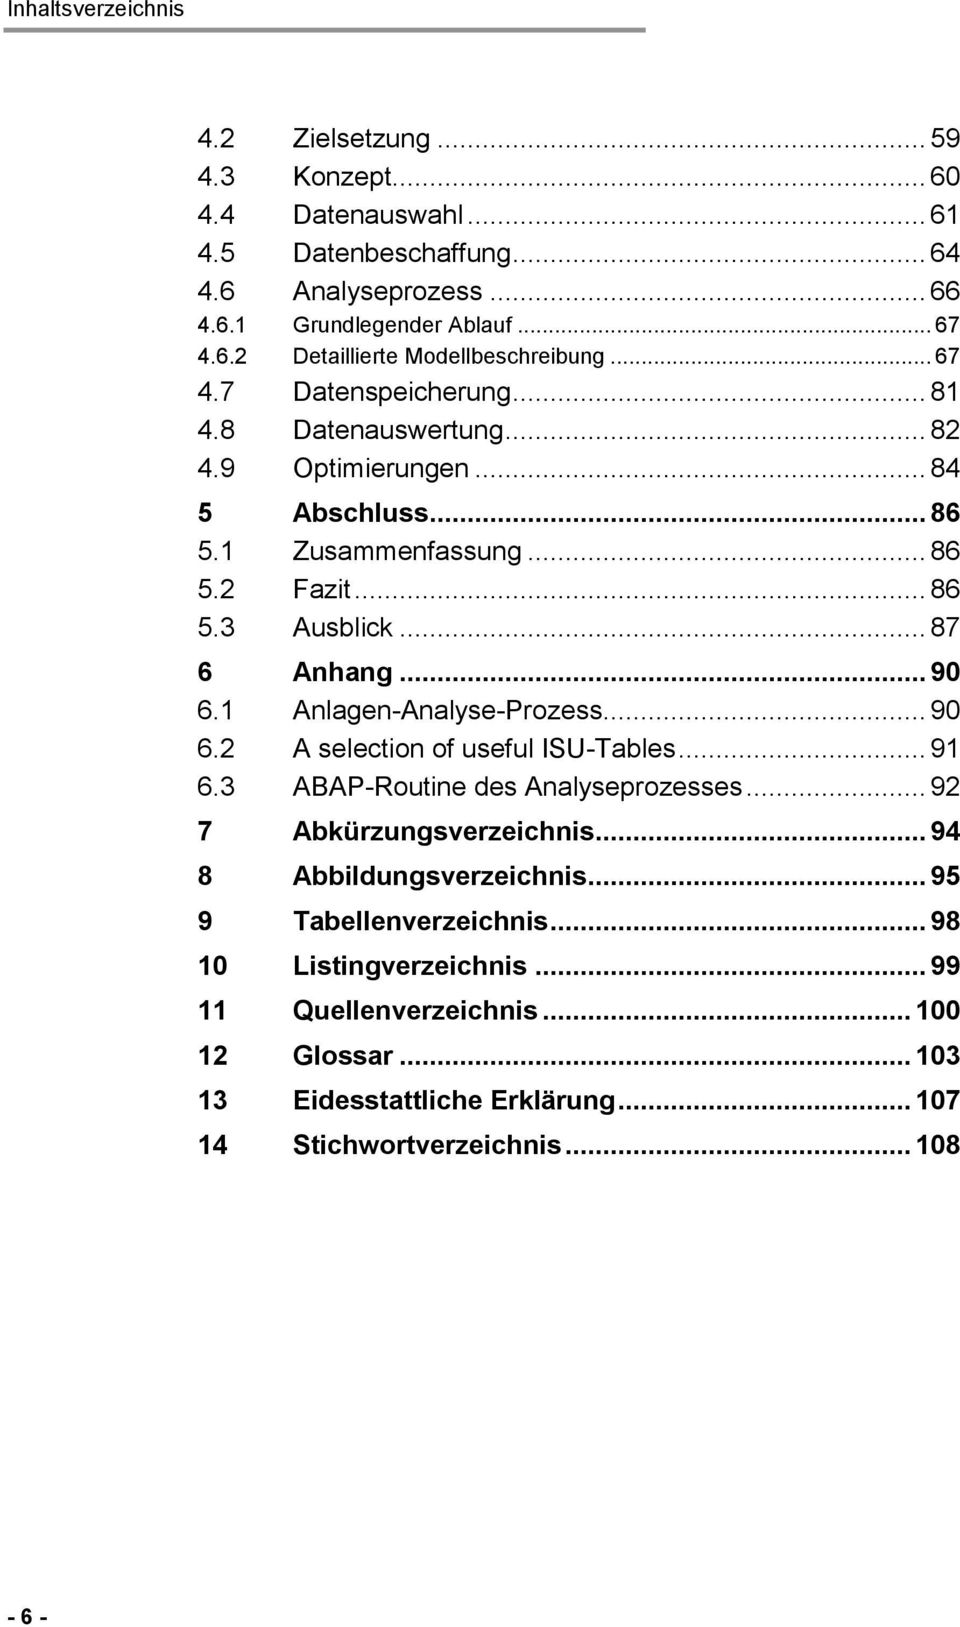 1 Anlagen-Analyse-Prozess... 90 6.2 A selection of useful ISU-Tables... 91 6.3 ABAP-Routine des Analyseprozesses... 92 7 Abkürzungsverzeichnis... 94 8 Abbildungsverzeichnis.